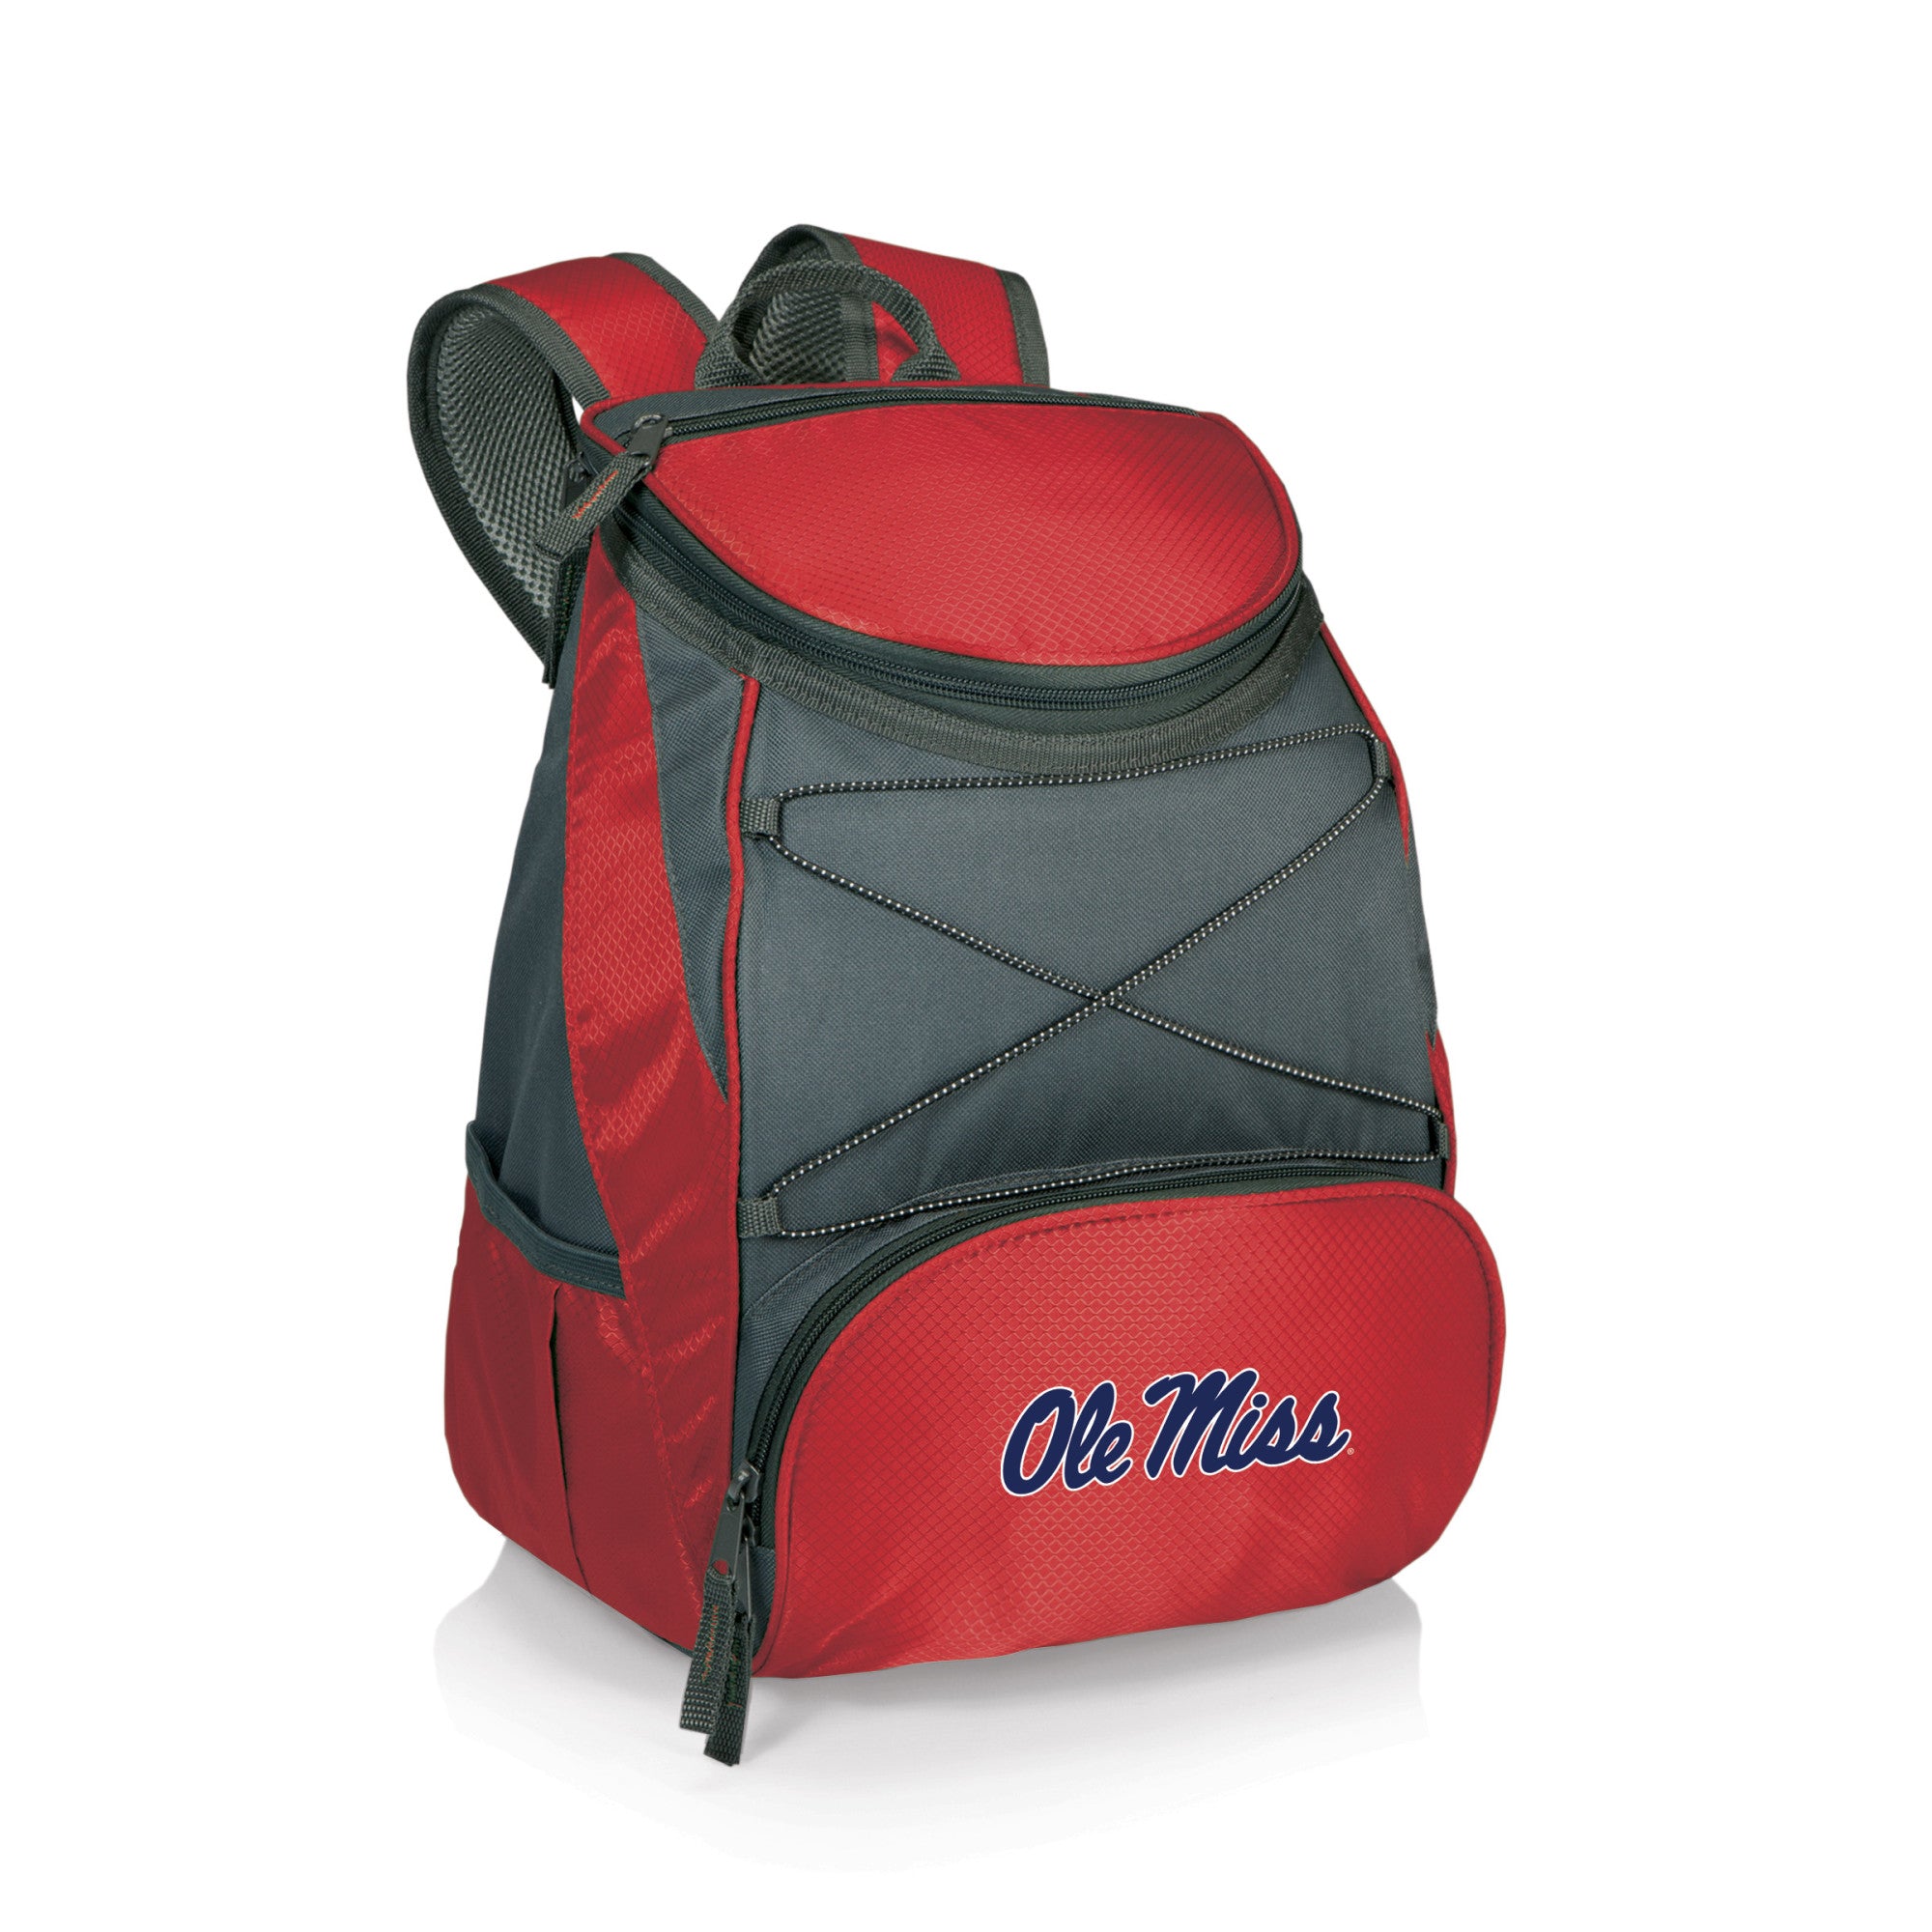 Ole Miss Rebels - PTX Backpack Cooler